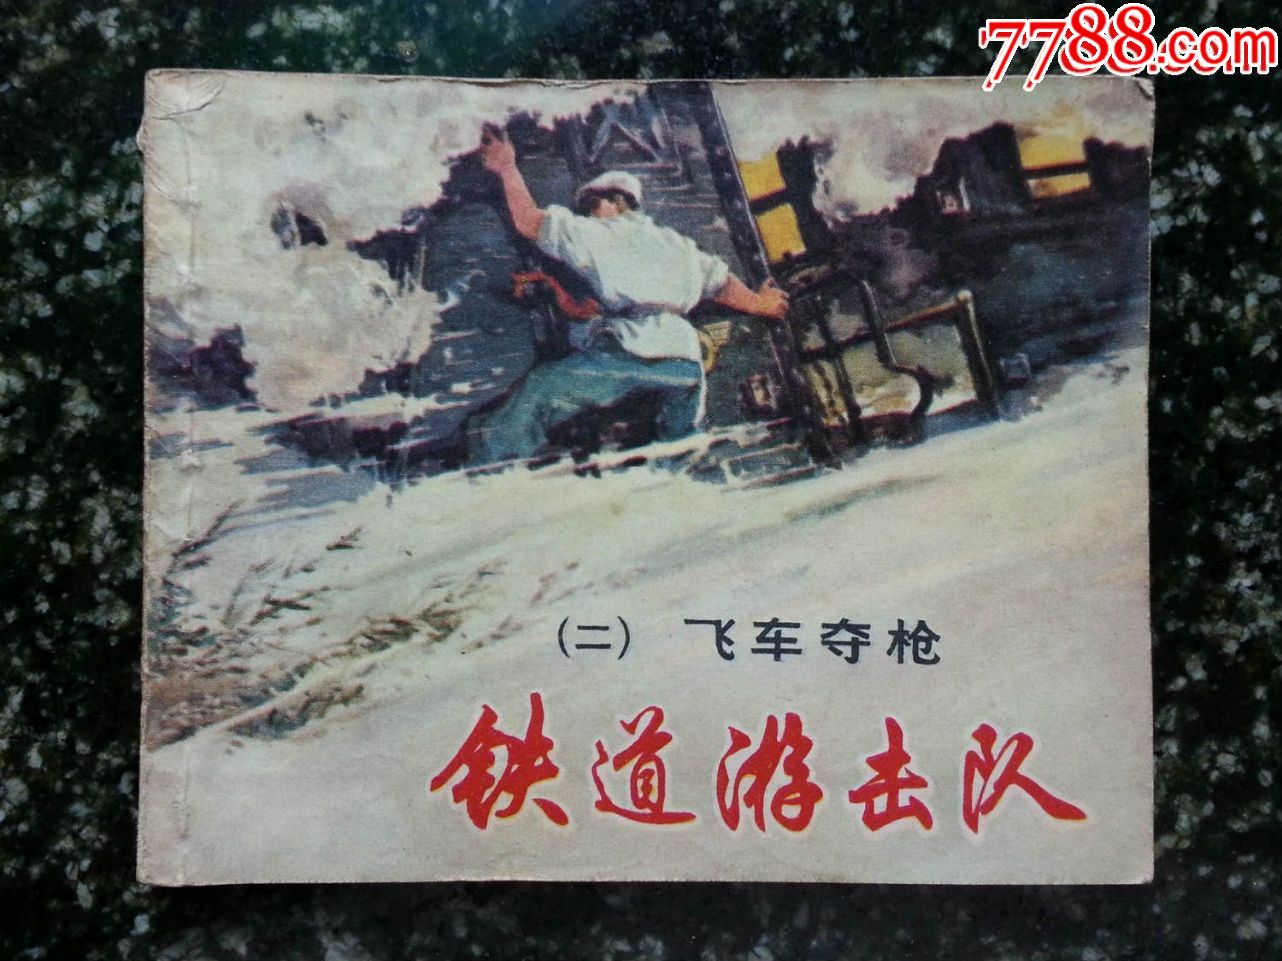 七十年代绘画版:《铁道游击队——飞车夺枪》丁斌曾